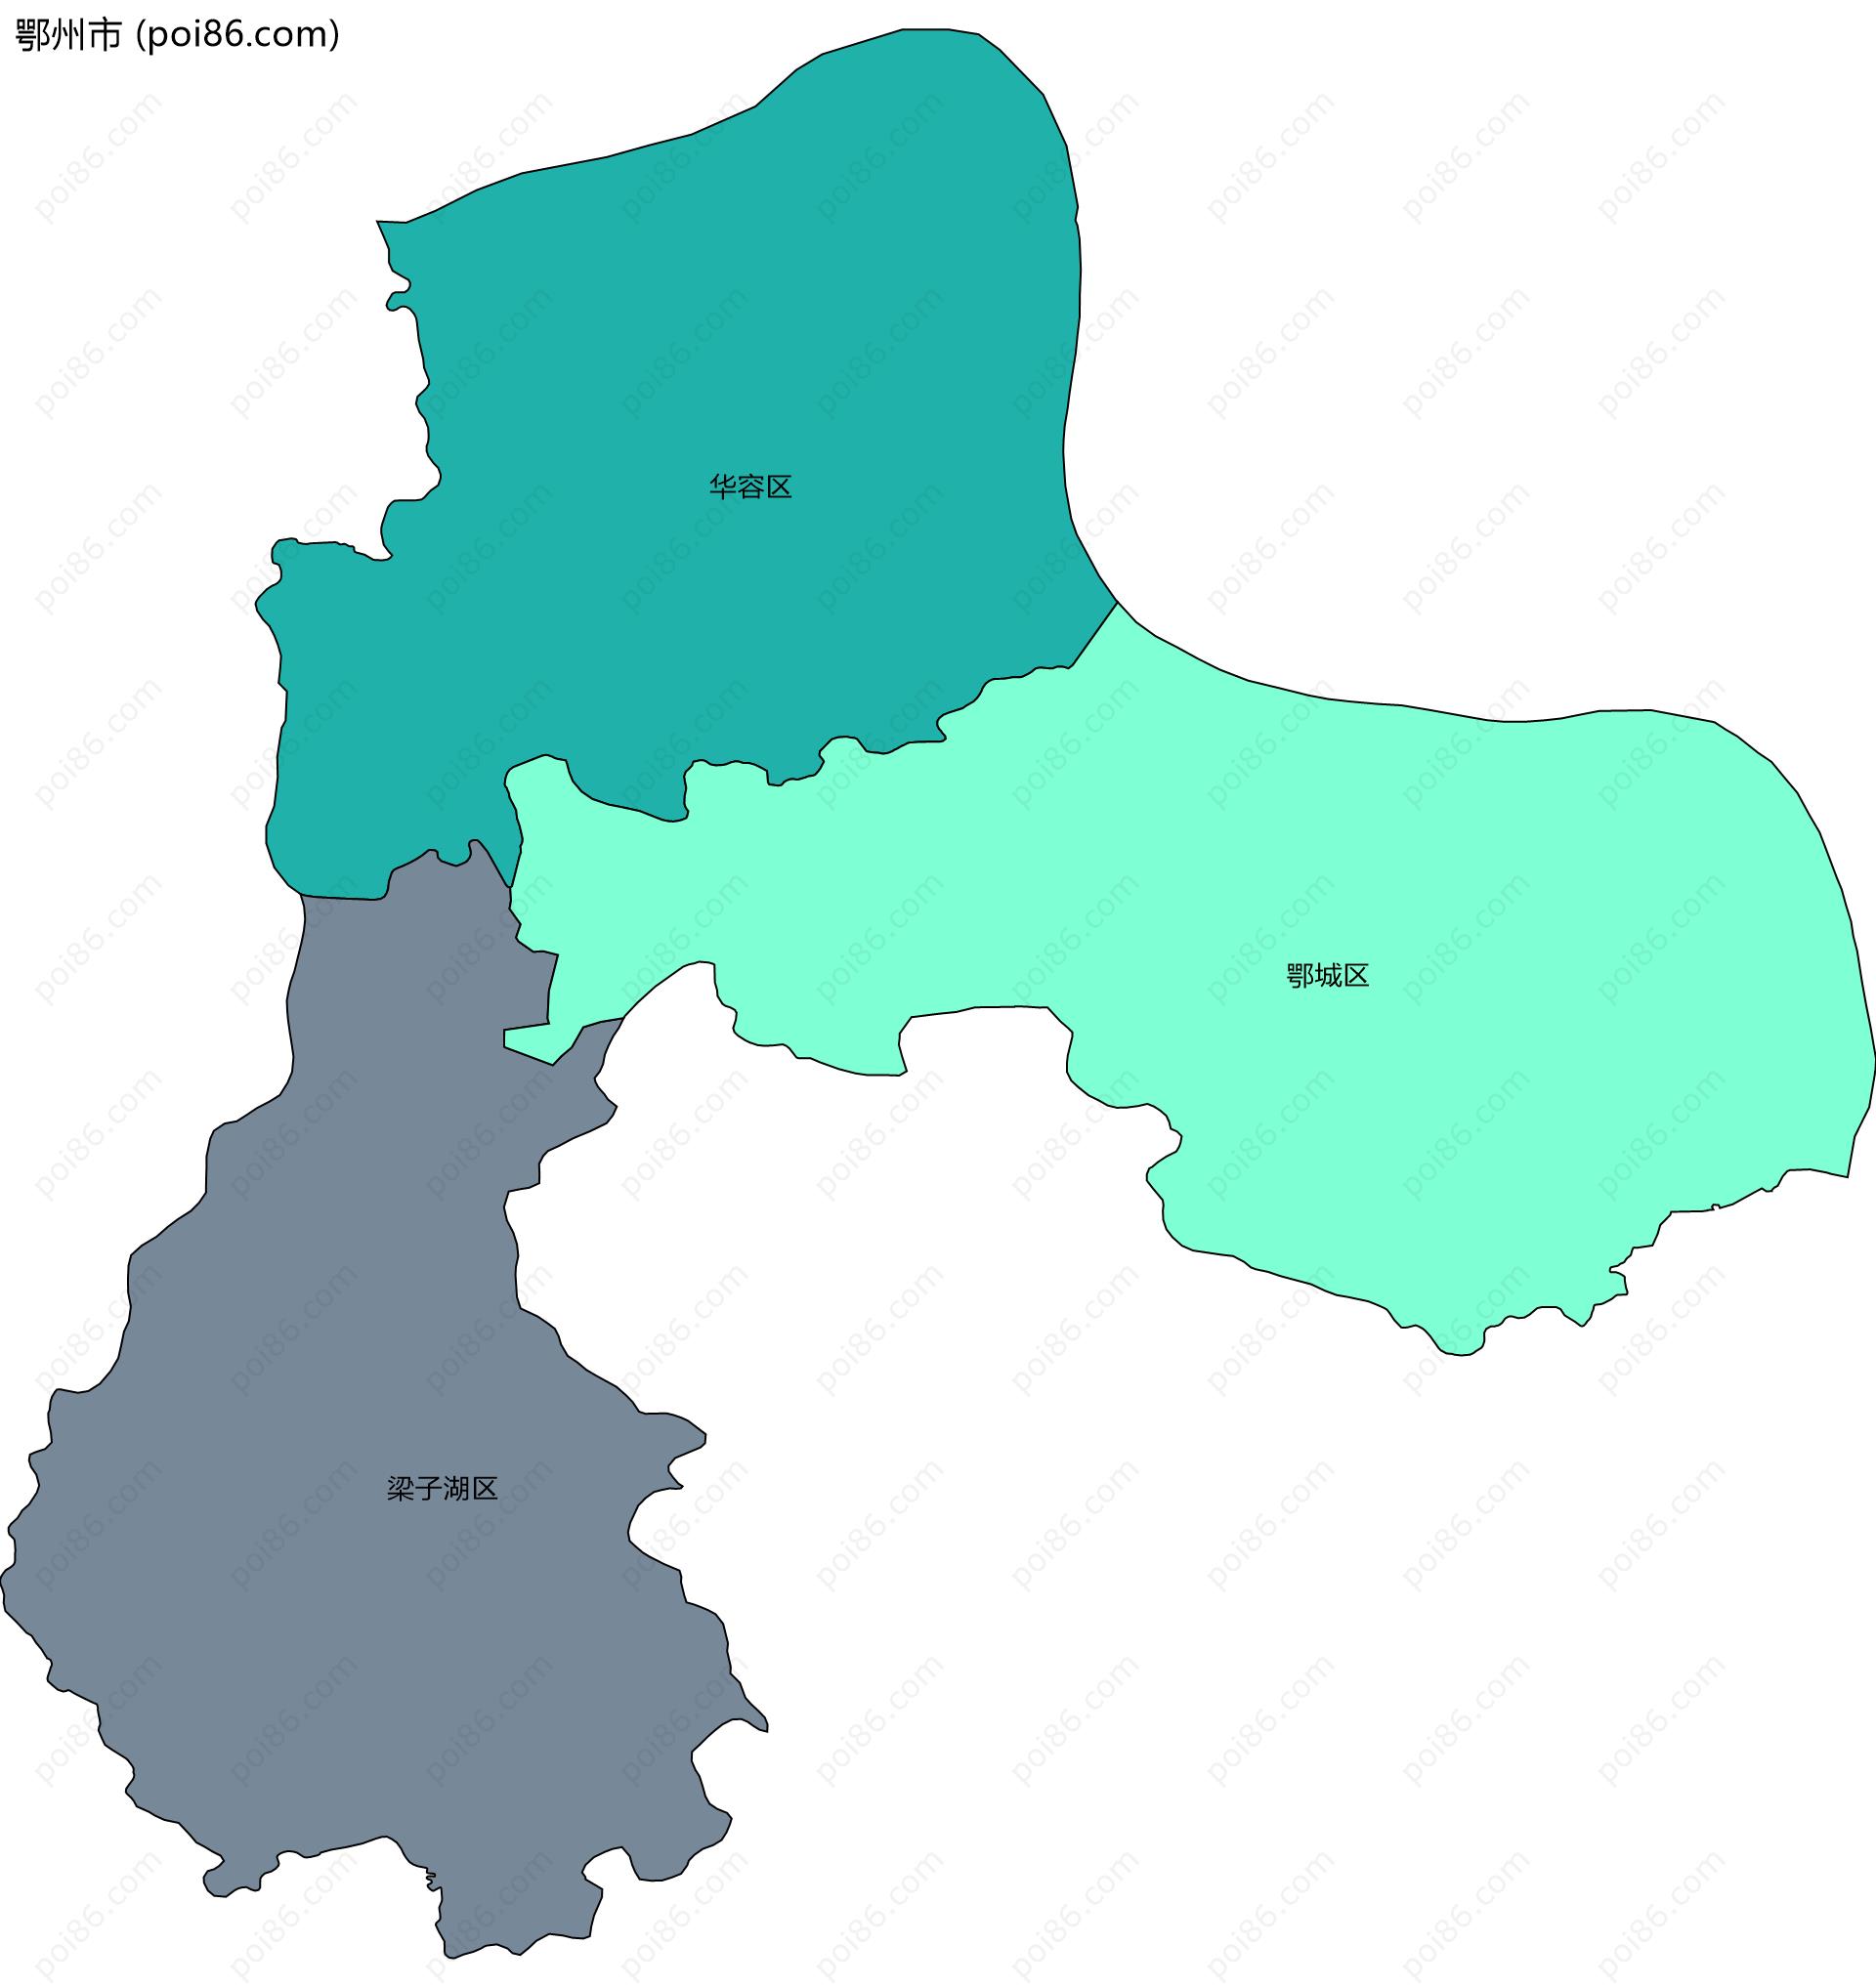 鄂州市边界地图